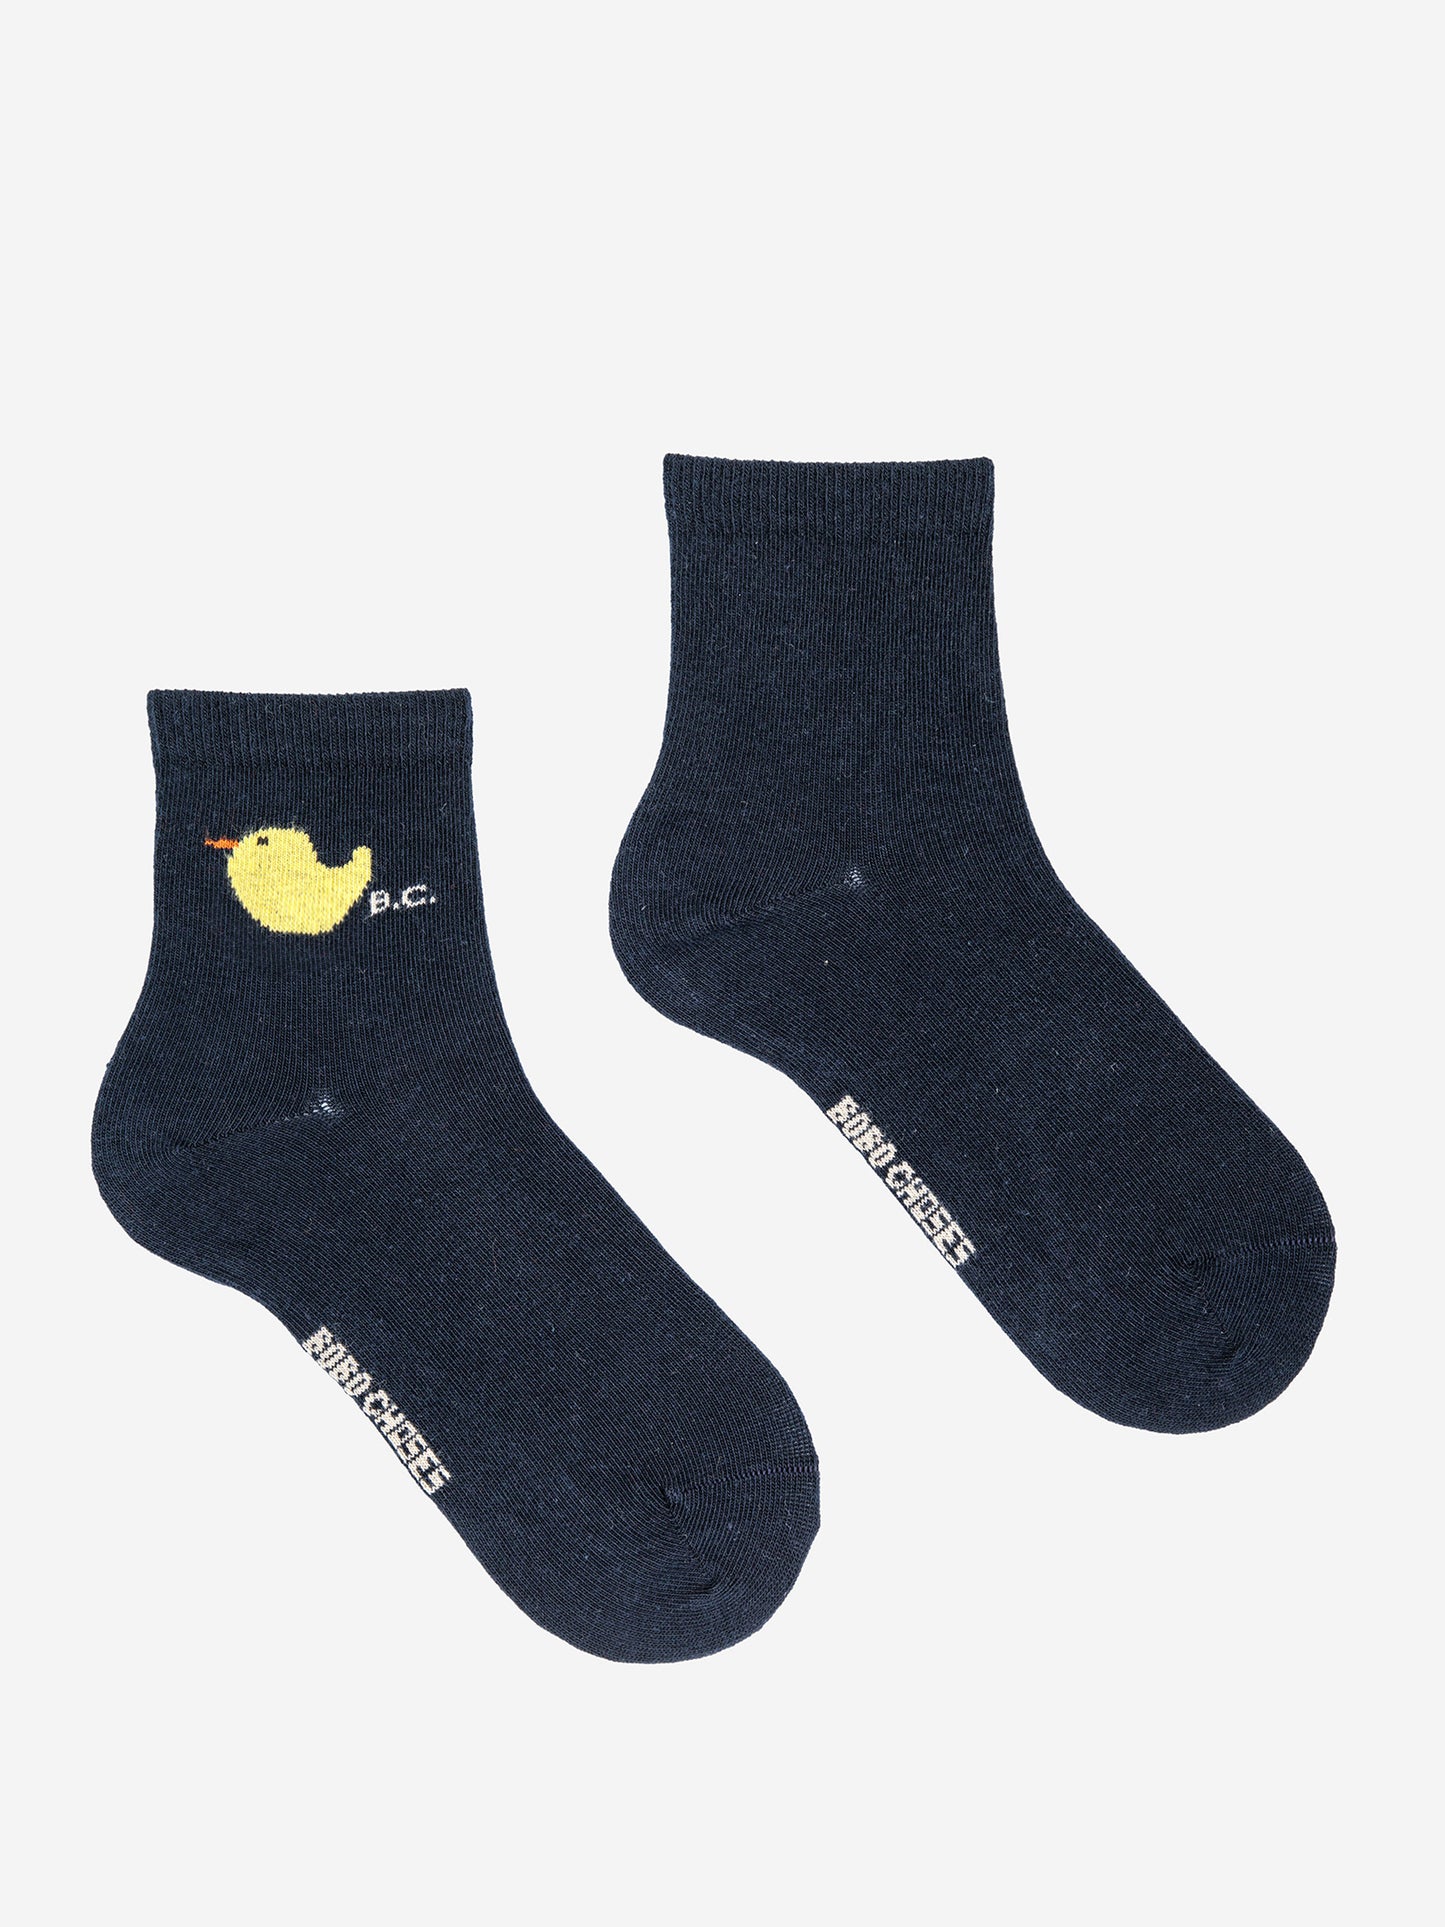 Rubber Duck short socks